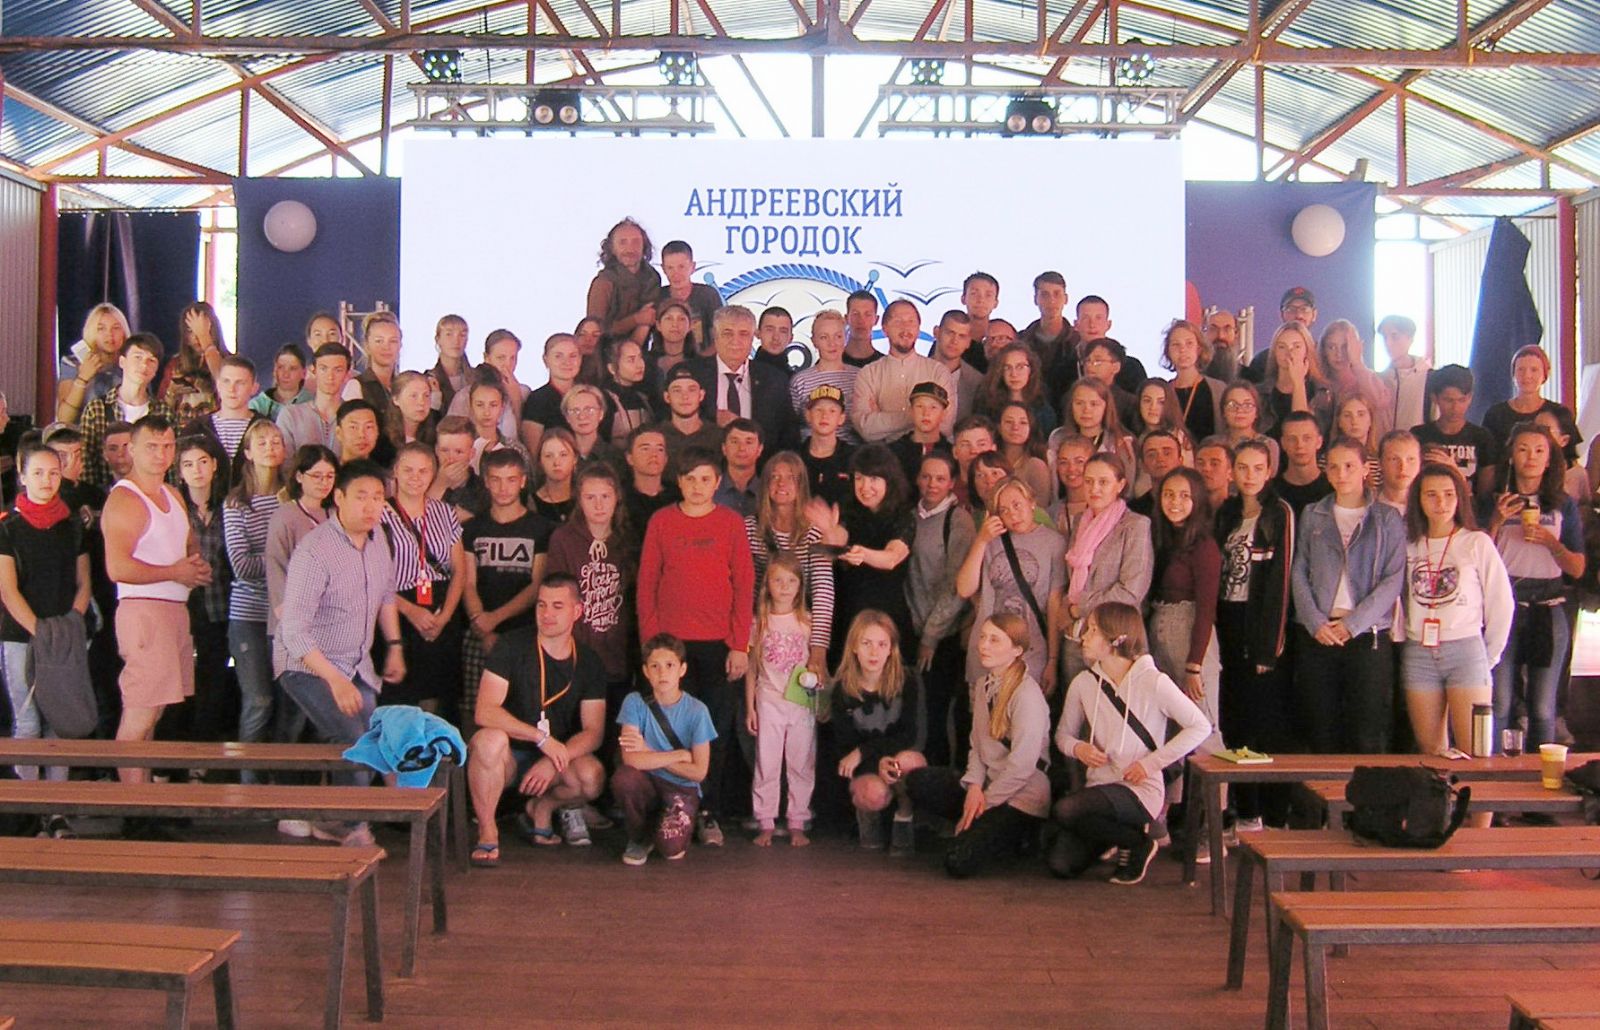 Дальневосточный форум инициативной молодежи «Андреевский городок» завершил свою работу